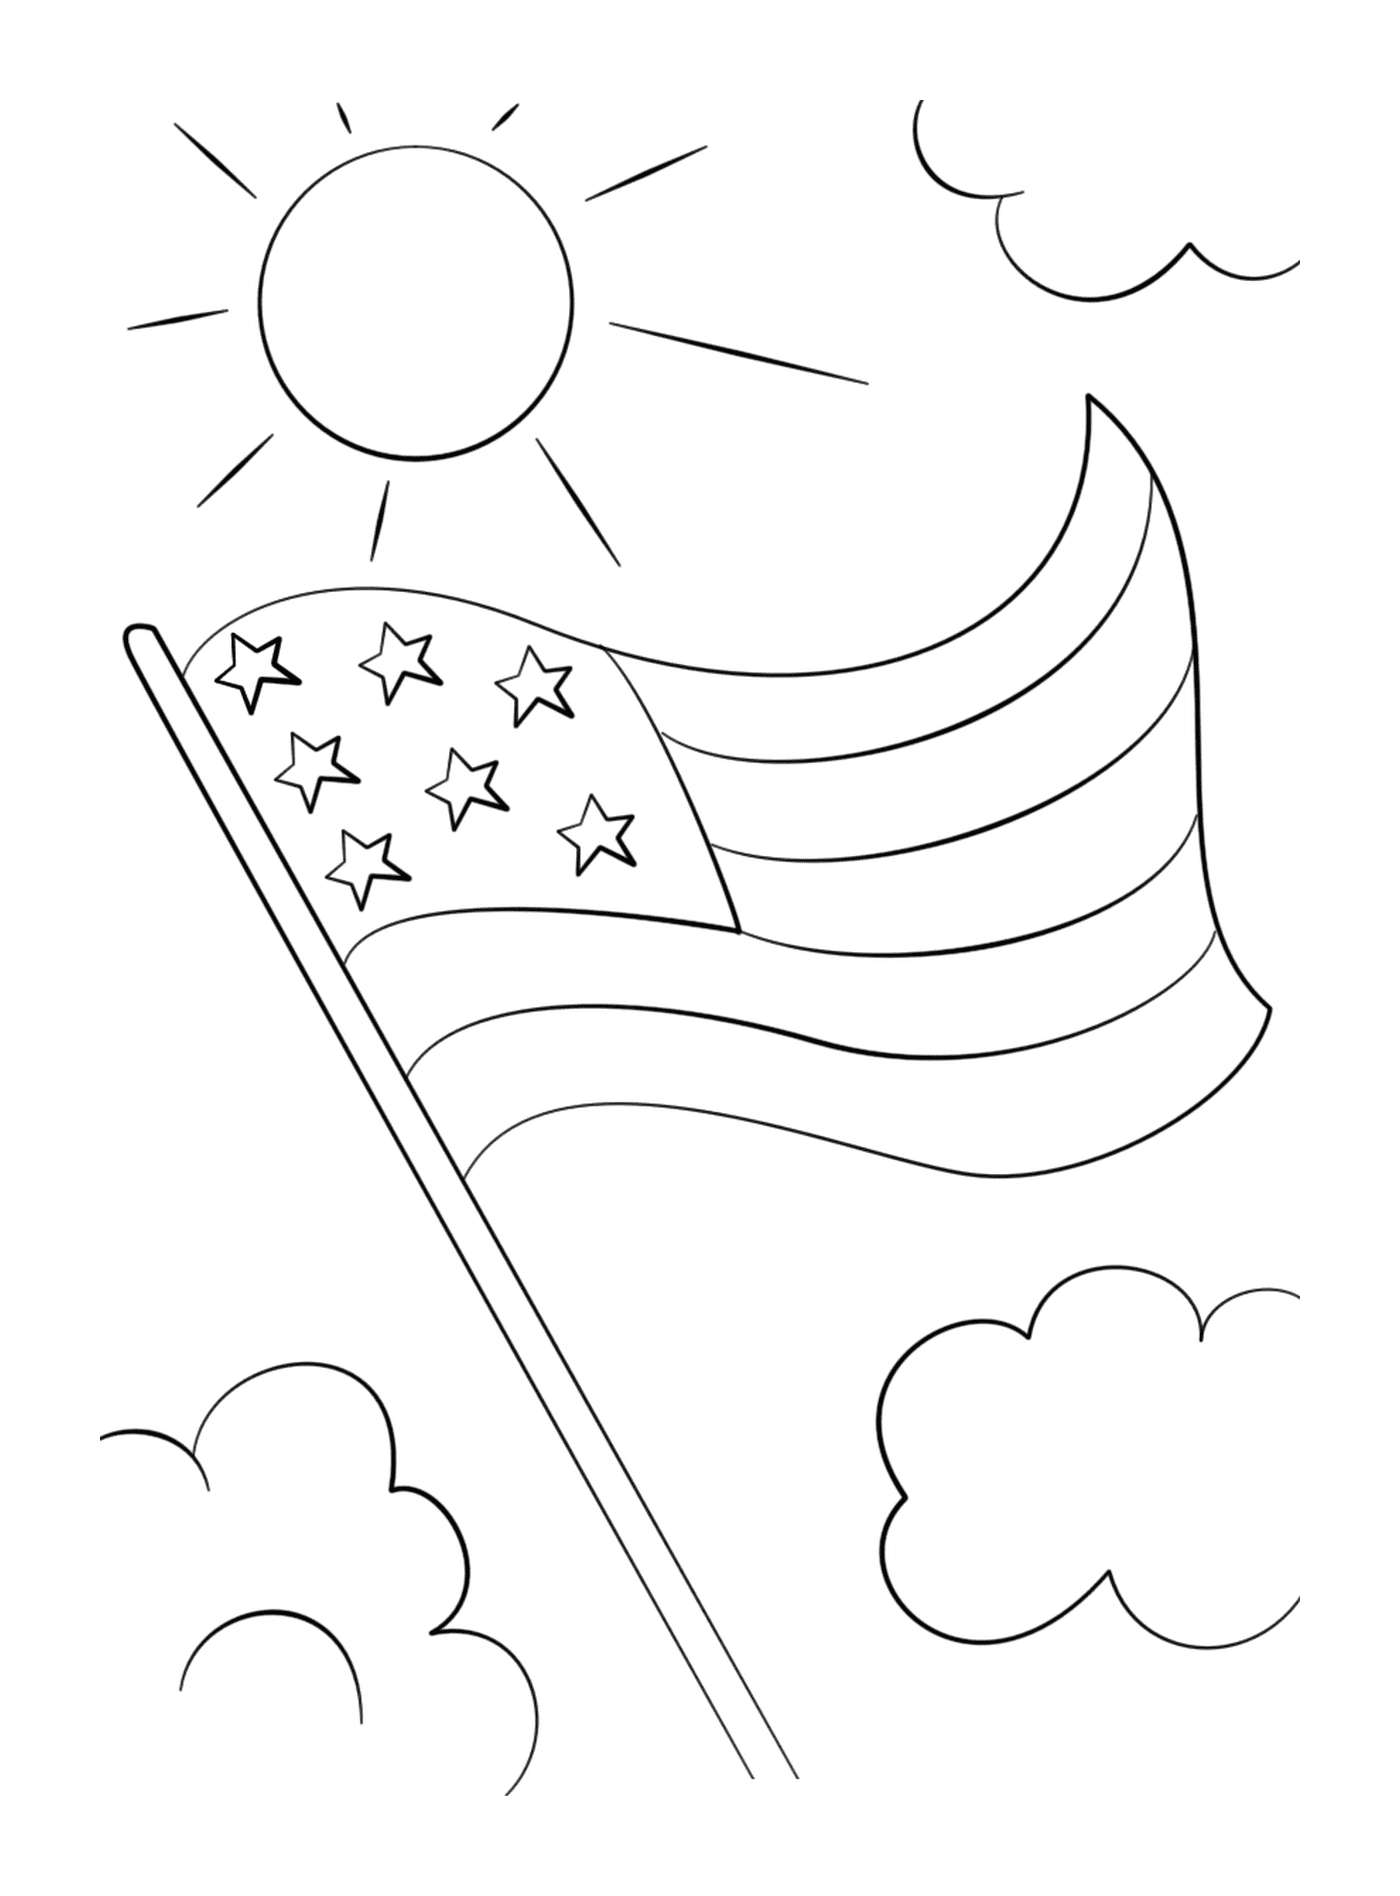  Bandiera americana con stelle che galleggiano nel cielo 